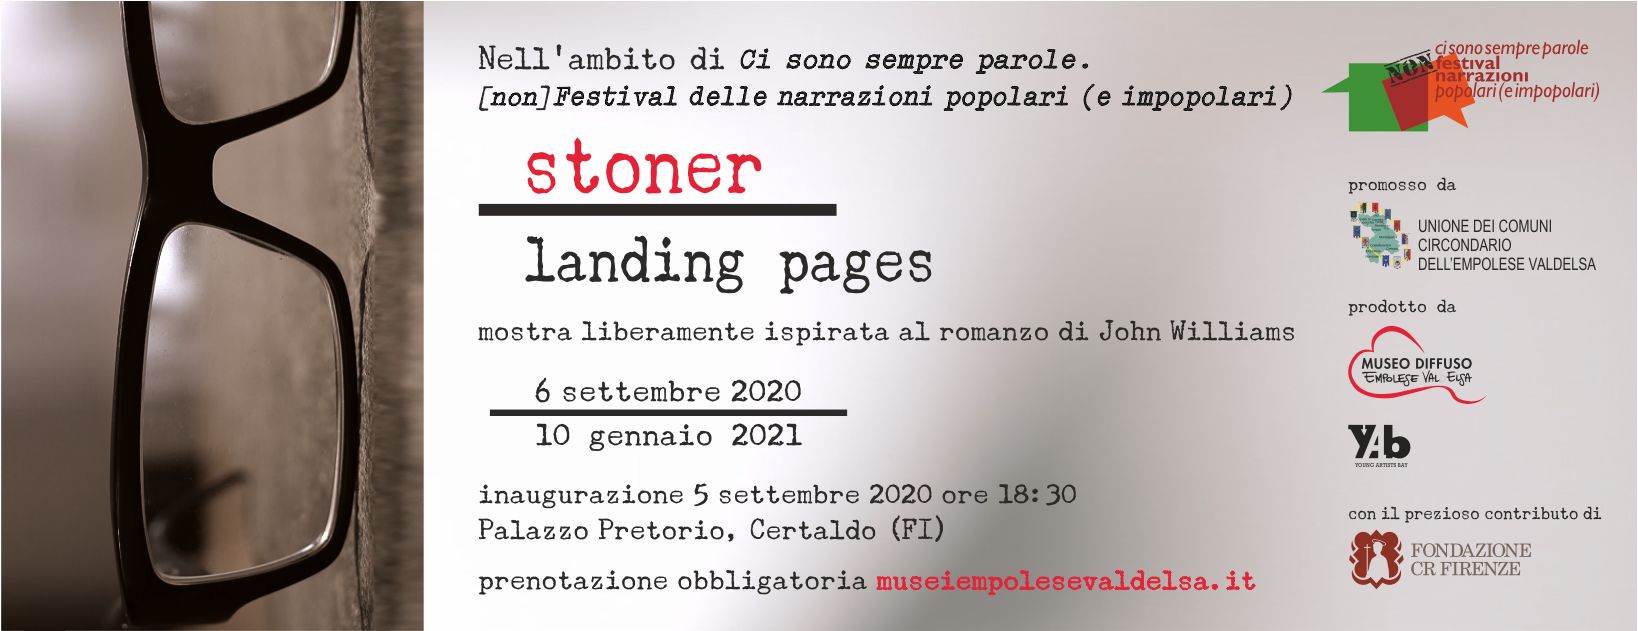 MuDEV. Mostra: "Stoner. Landing pages" al Palazzo Pretorio di Certaldo